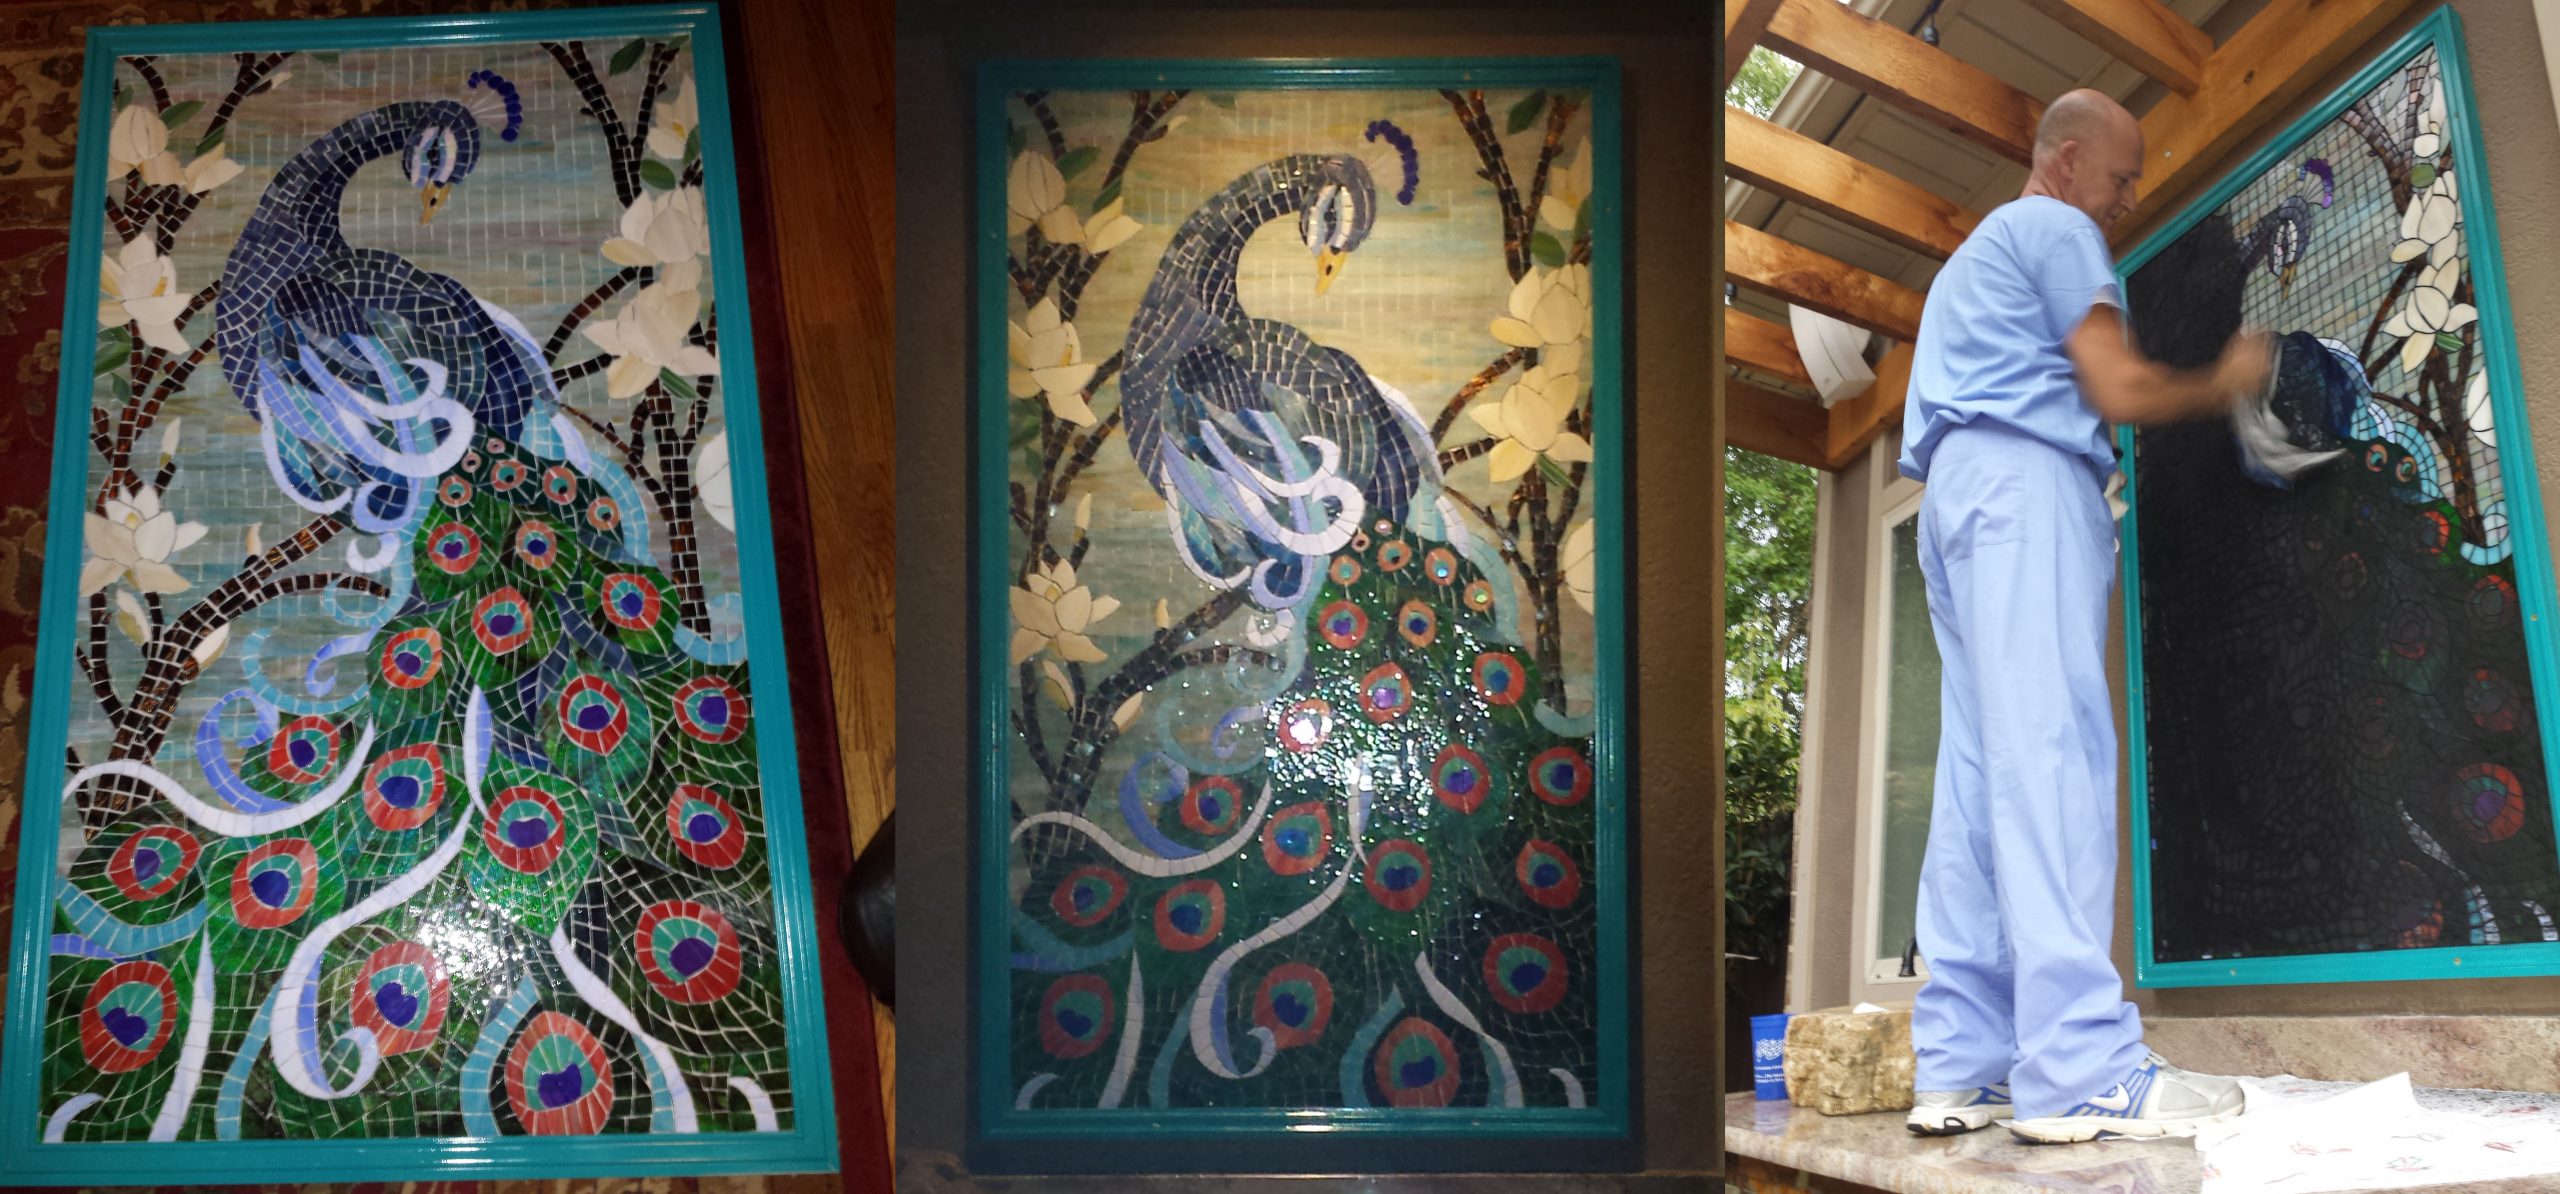 Mosaic Peacock by artist Lonnie Parsons